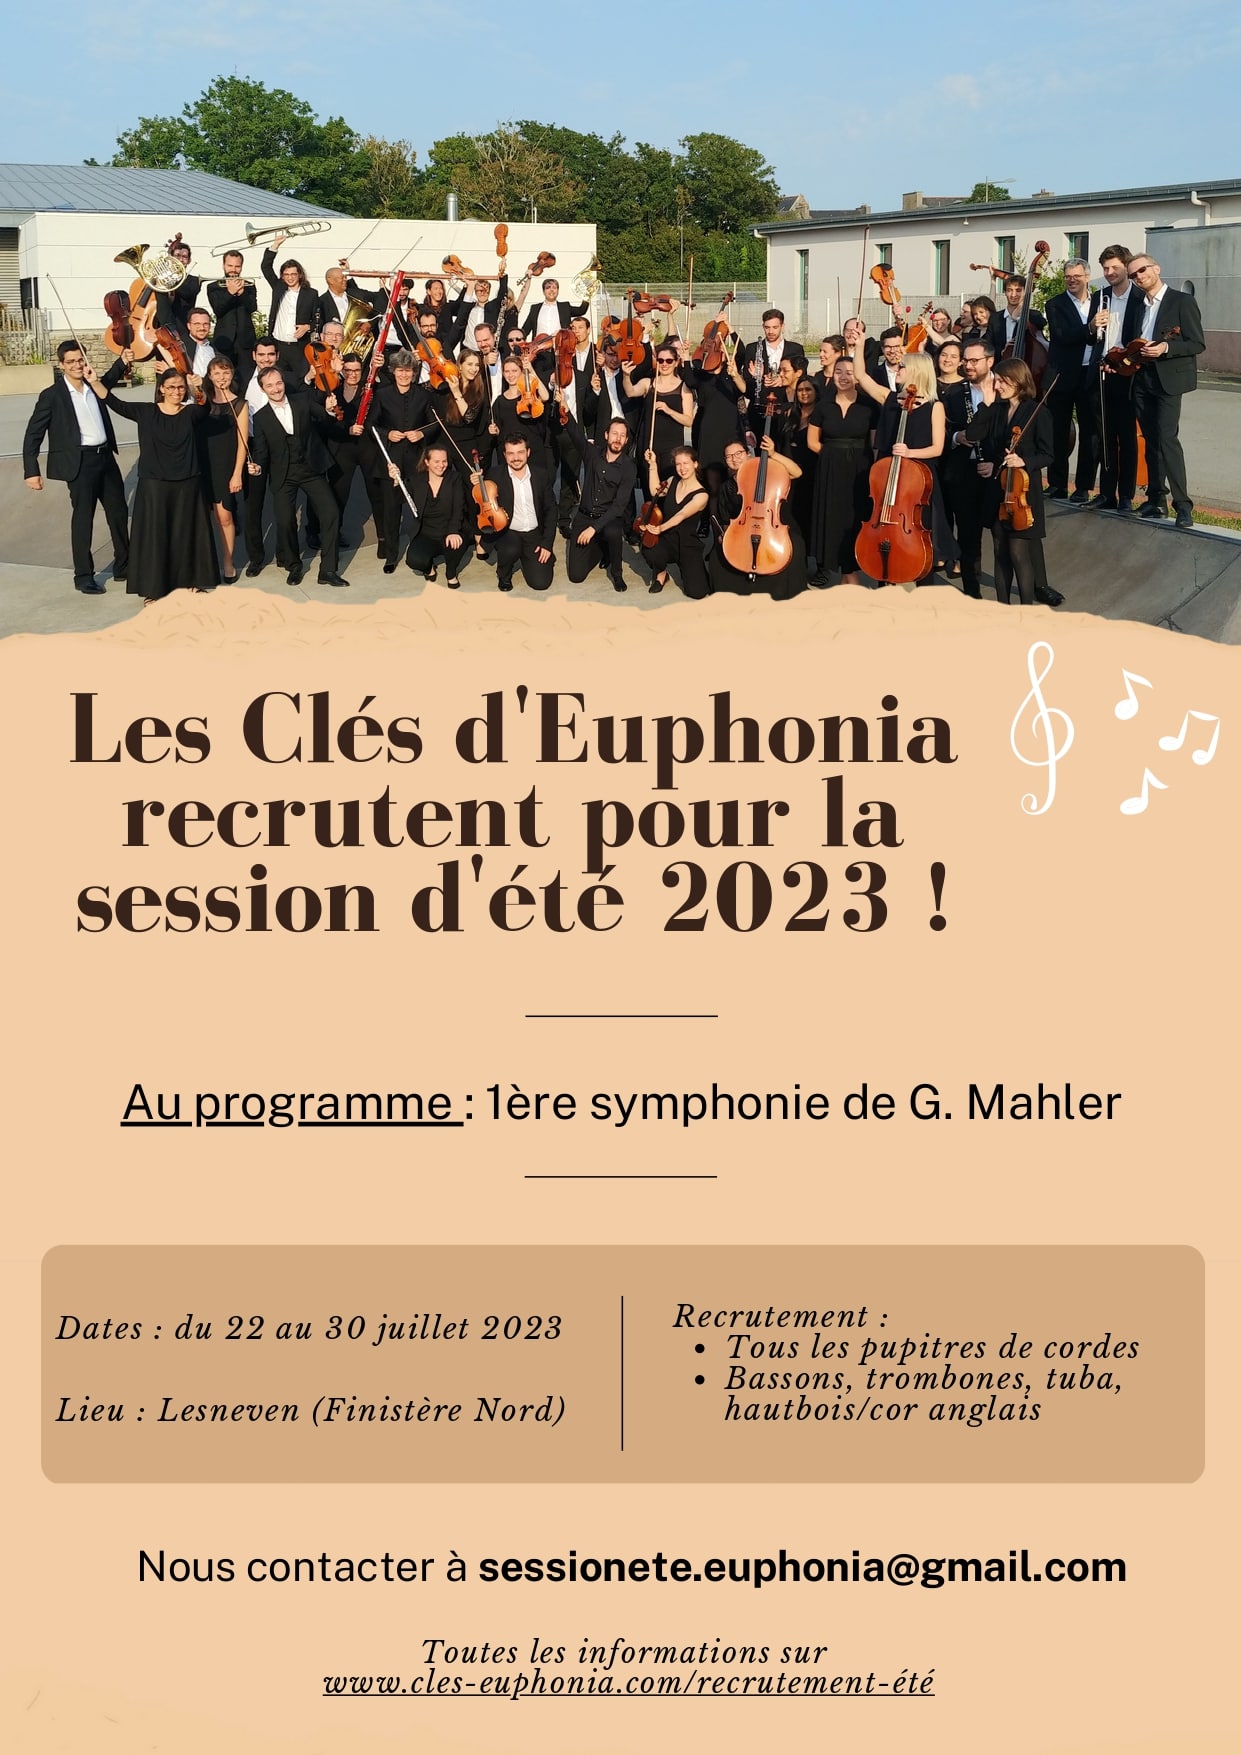 L'orchestre symphonique Les Clés d'Euphonia recrute pour sa session d'été 2023